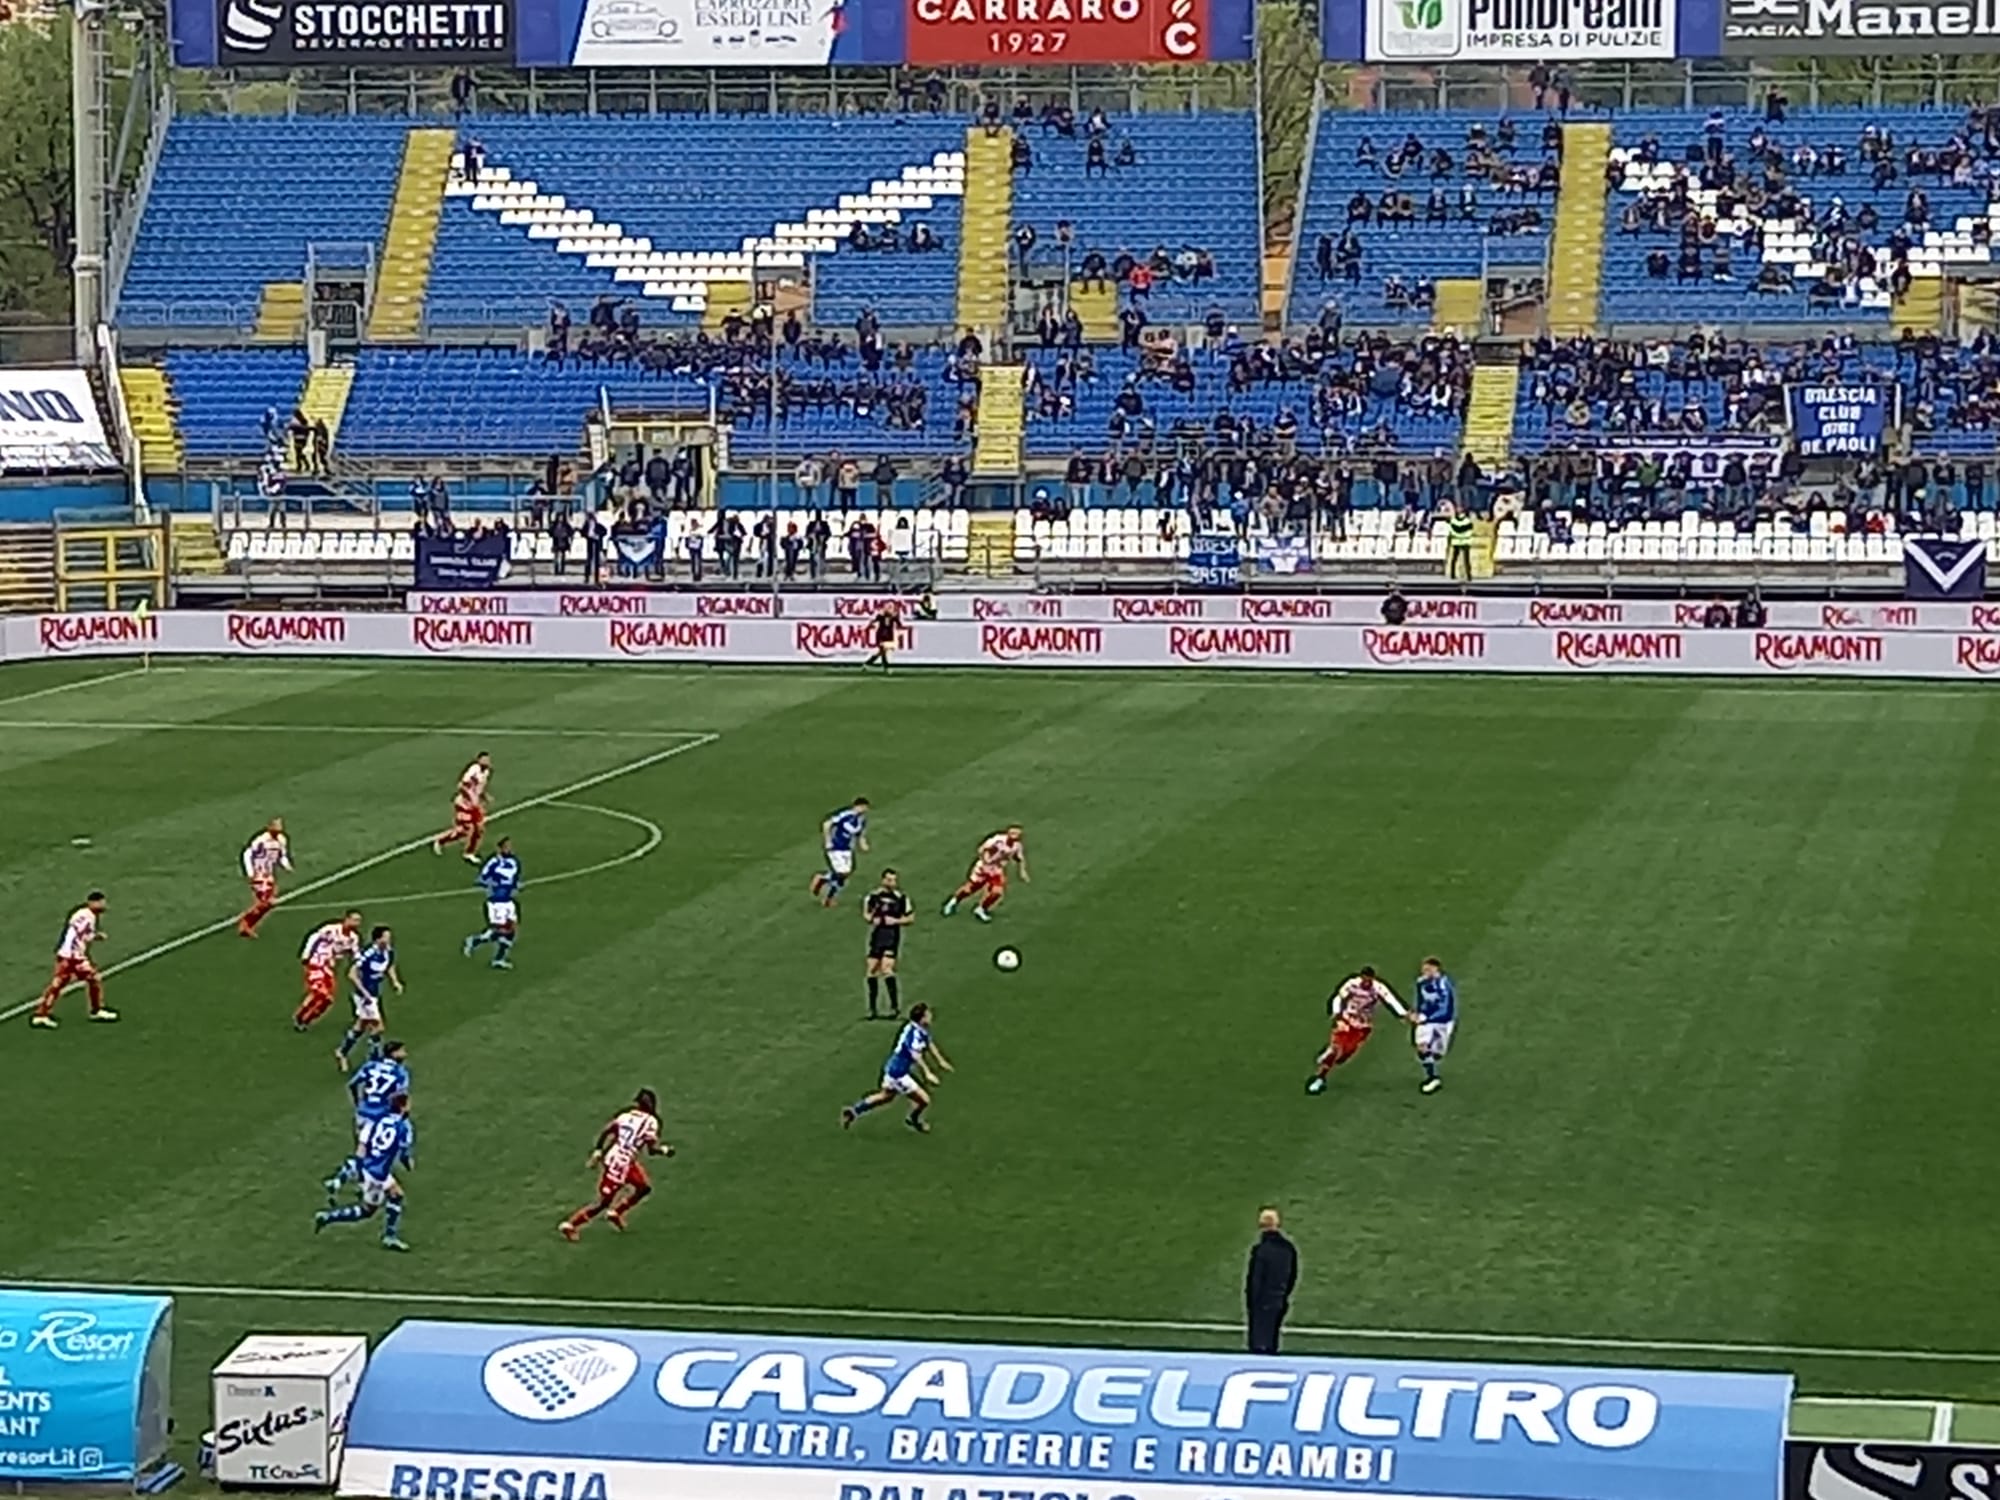 Brescia-L.R. Vicenza 2-0 (32^ giornata)